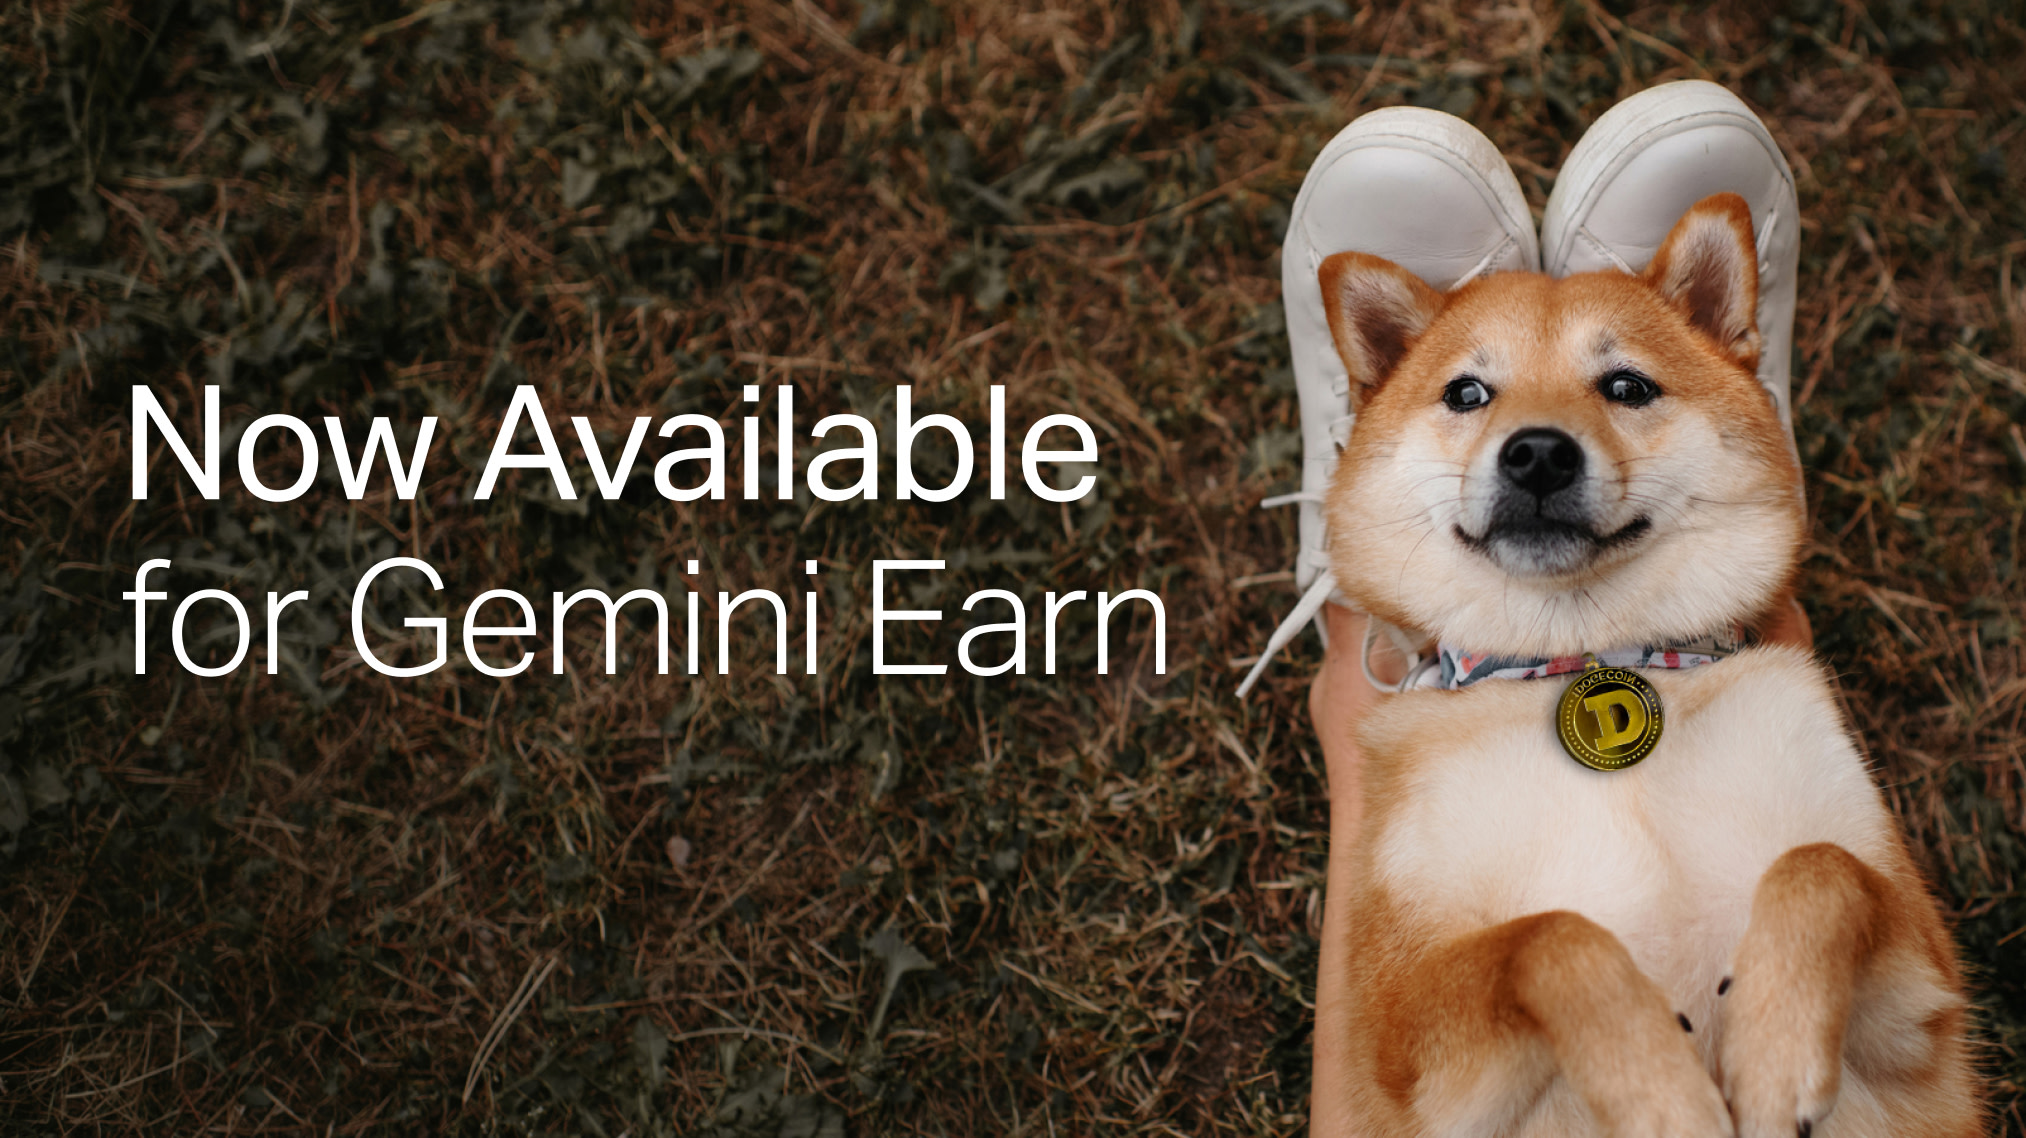 gemini earn doge